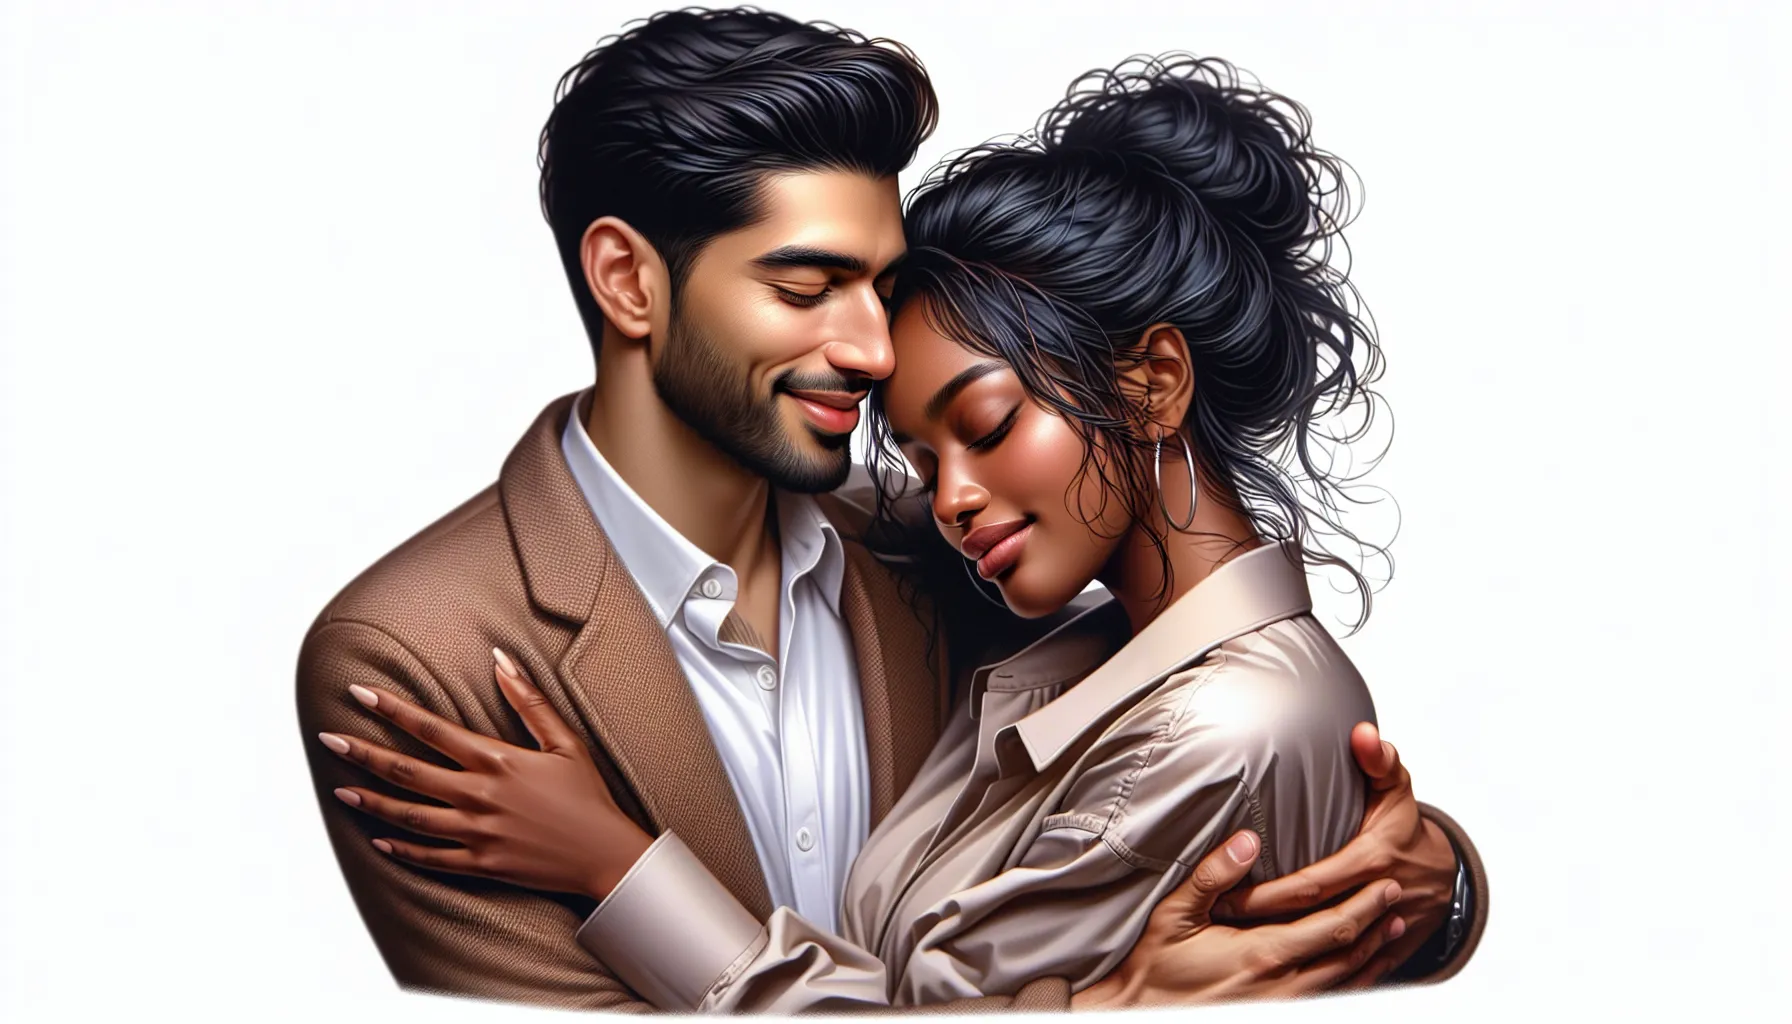 'Ilustración de una pareja casada abrazándose y sonriendo, simbolizando la intimidad y conexión emocional en el matrimonio según la Biblia.'